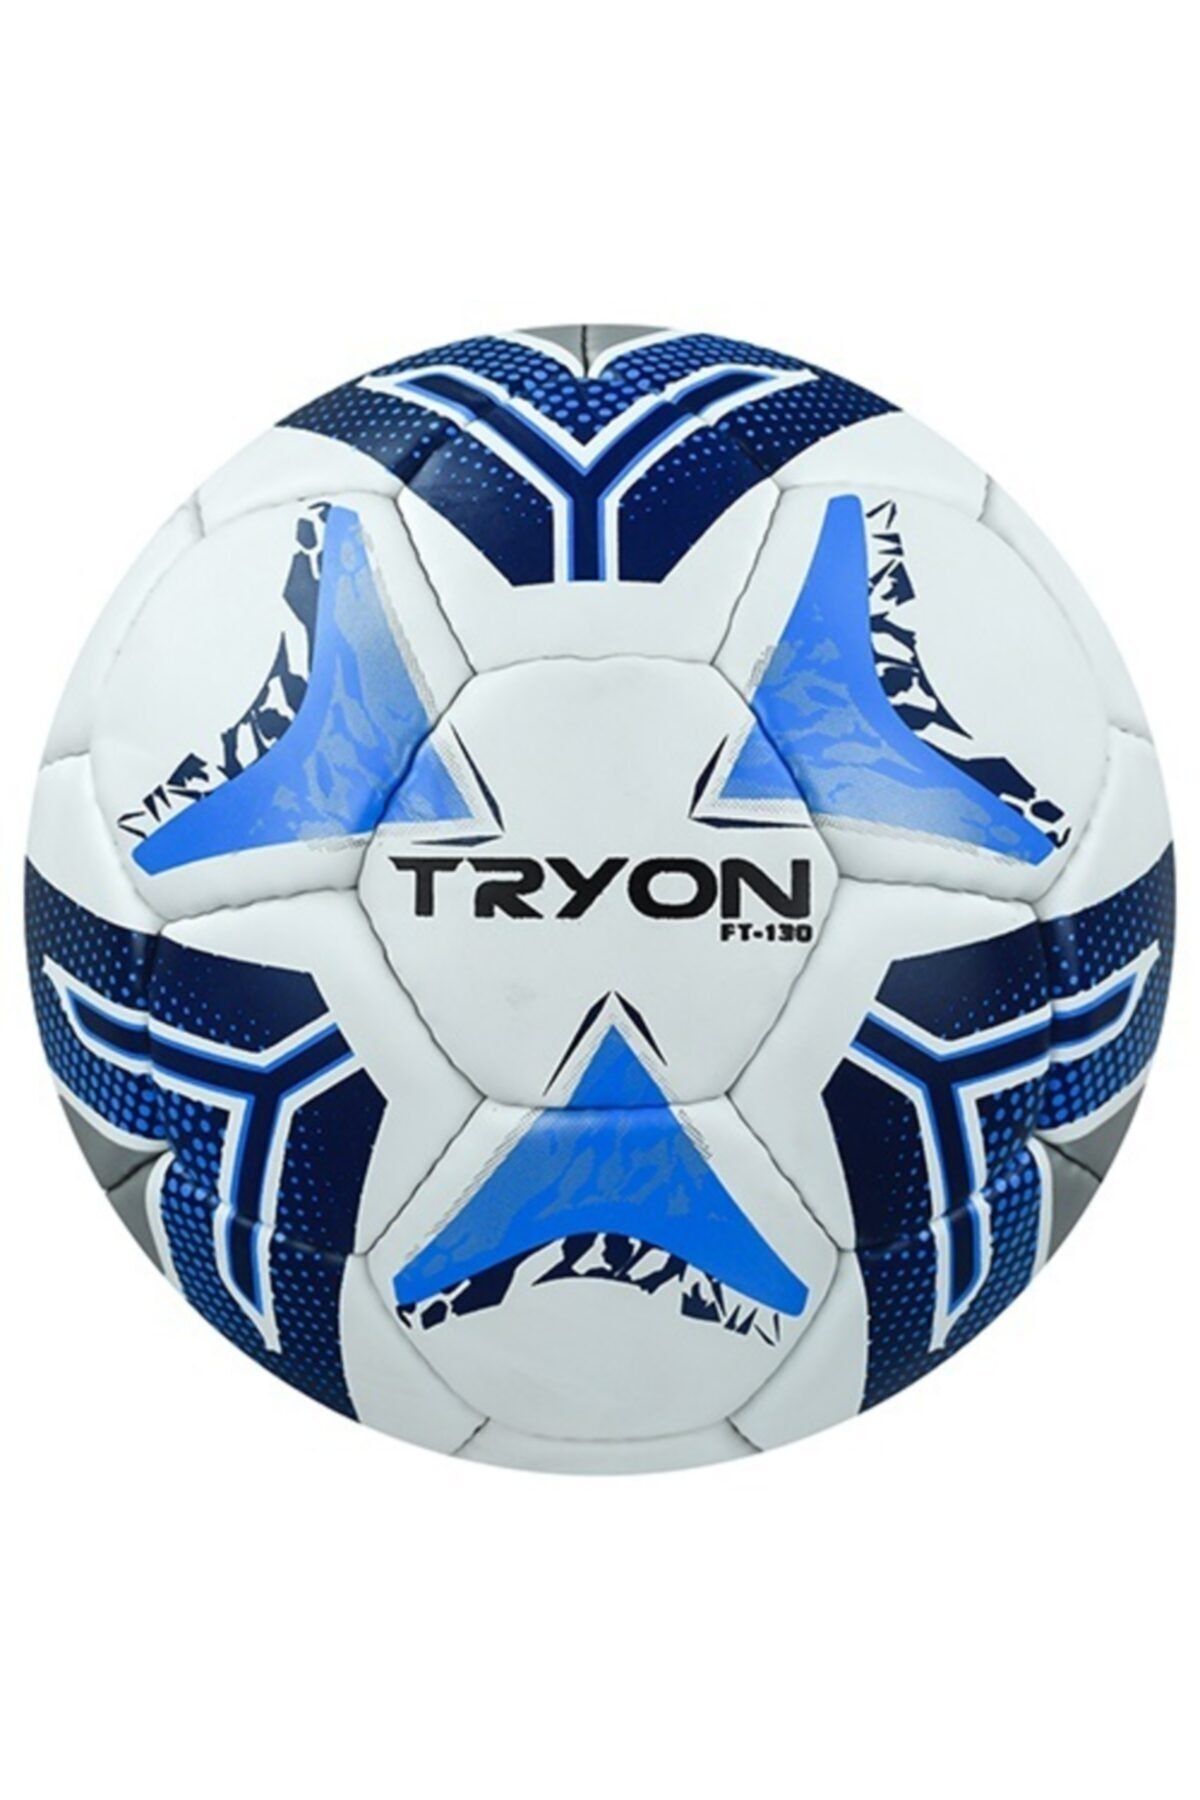 TRYON Ft-130 Futbol Topu